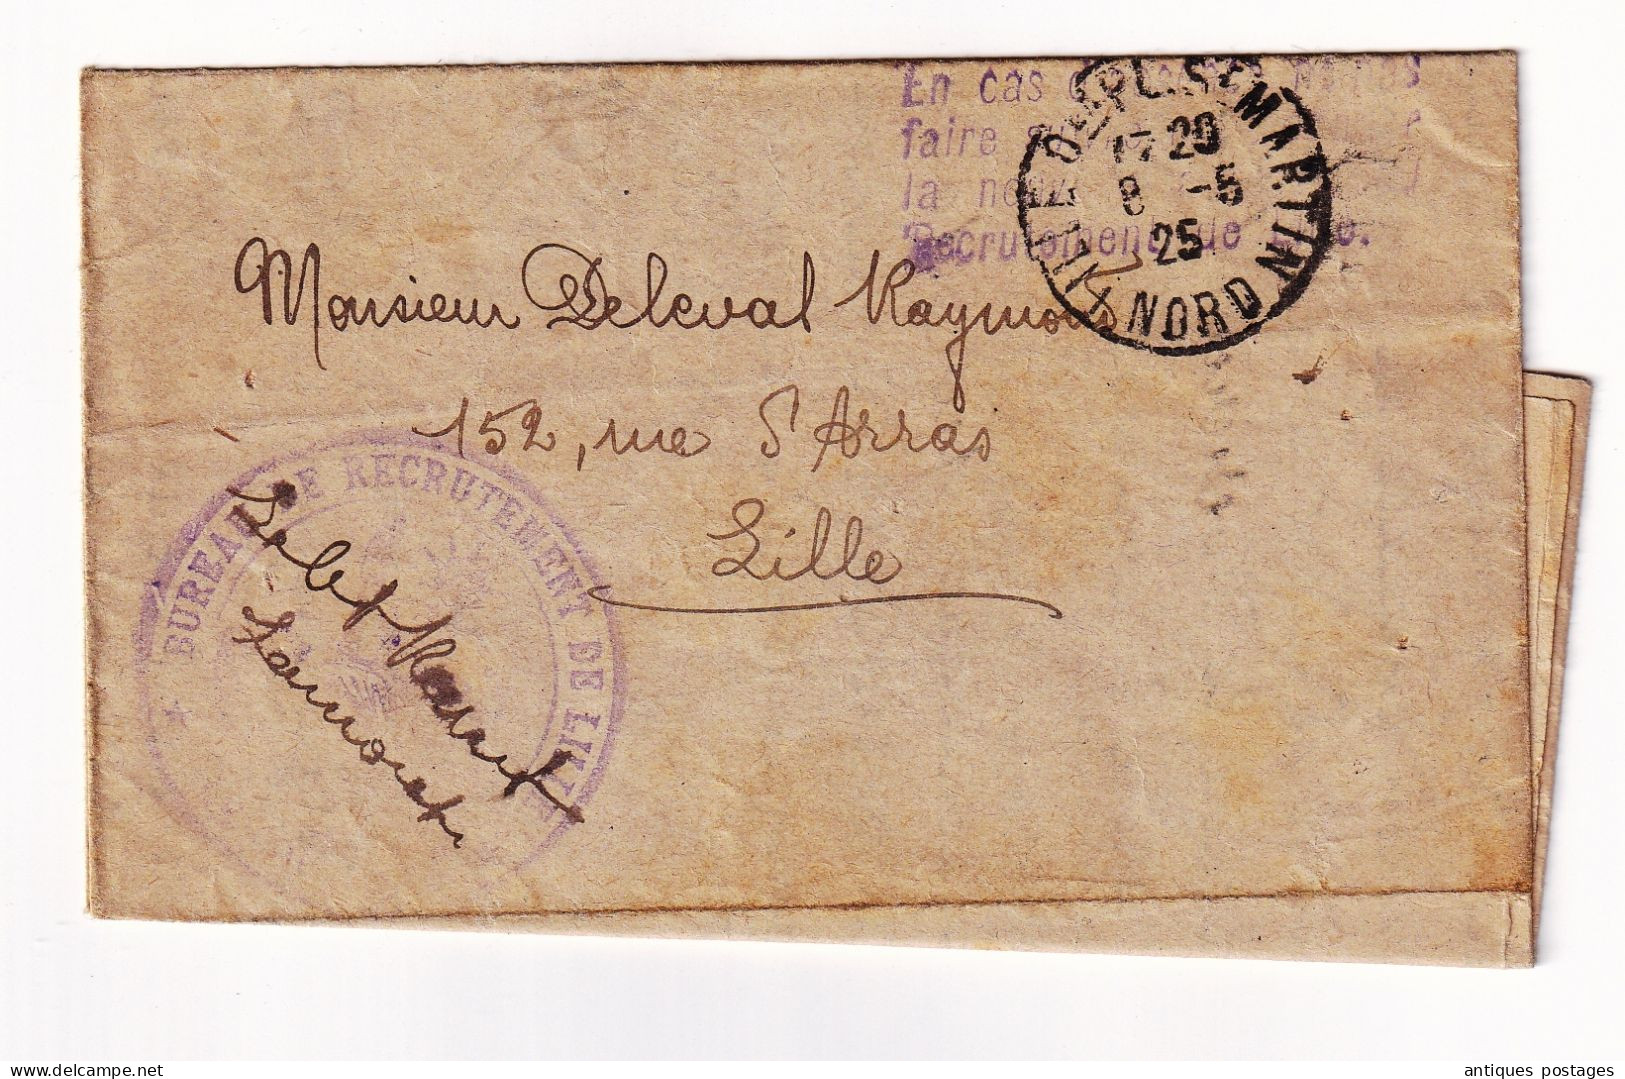 Service Militaire 1925 Bureau De Recrutement De Lille Nord Deleval Raymond Commission Spéciale De Réforme - Military Postmarks From 1900 (out Of Wars Periods)